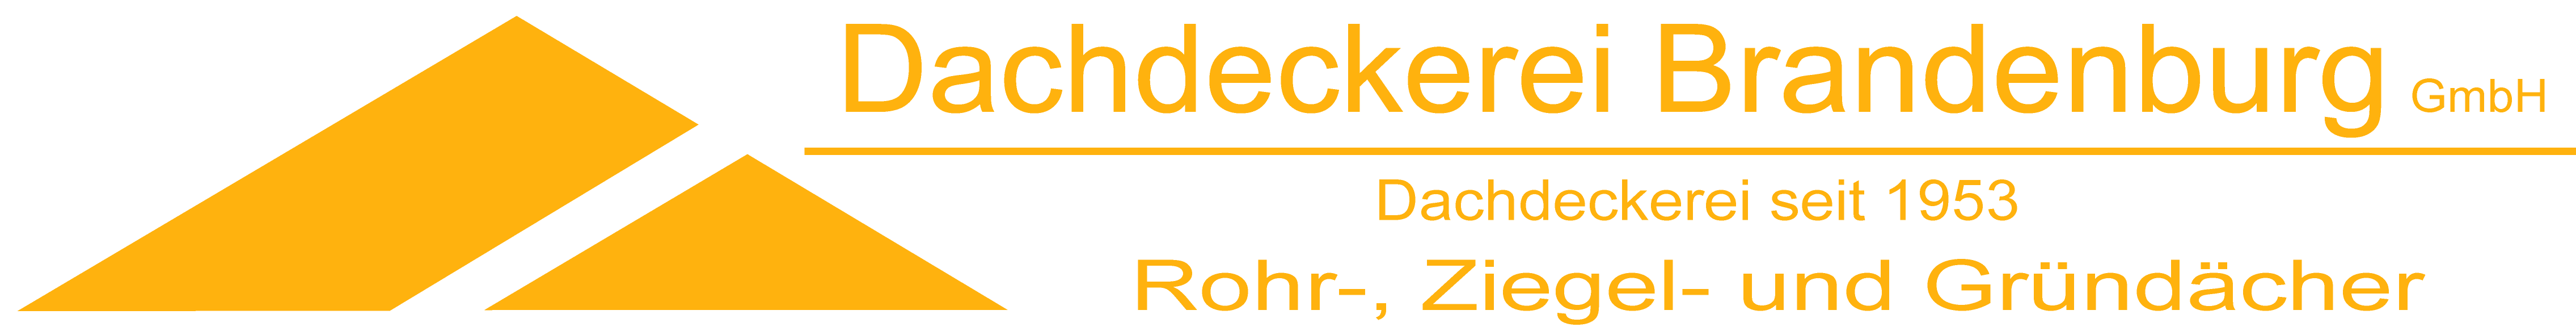 Dachdeckerei-Brandenburg